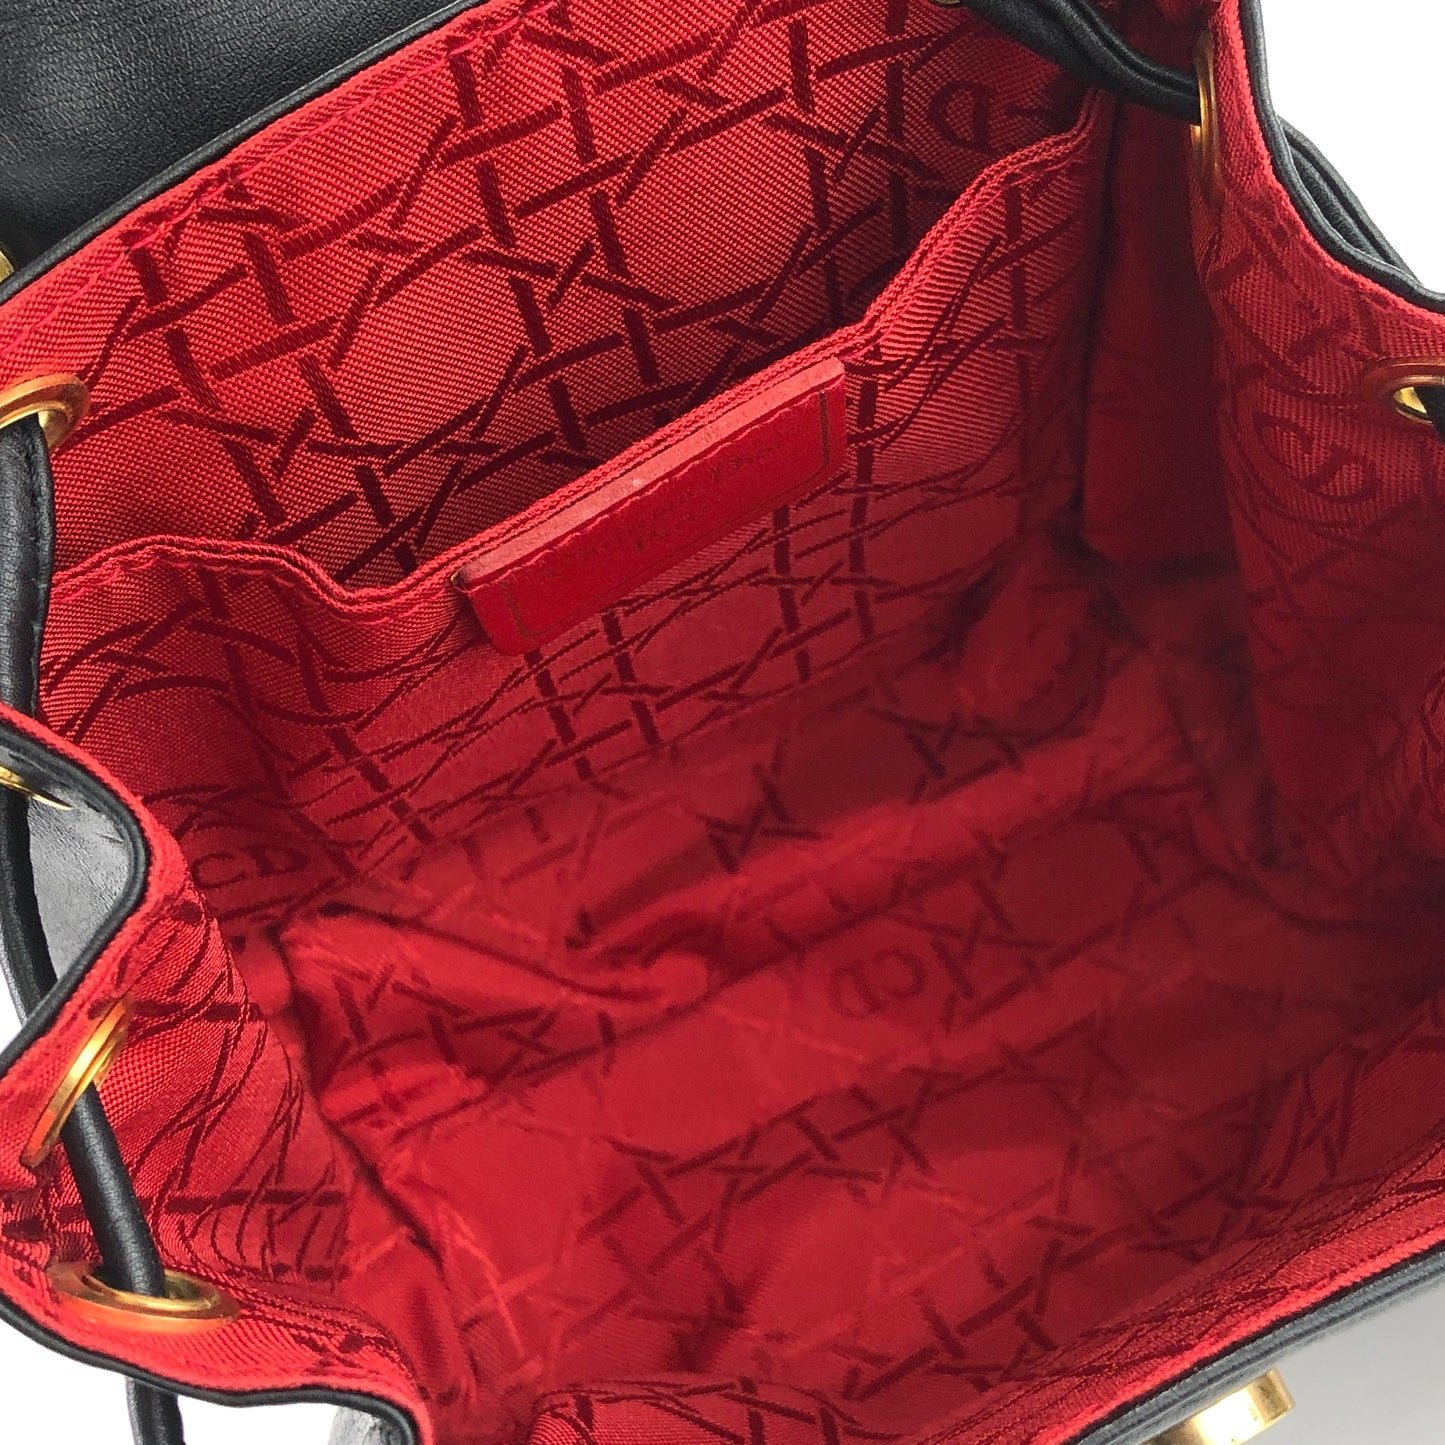 Christian Dior Cannage Logo Charm Leather Mini bag Shoulder bag Pochette Black Vintage Old g8k6nf